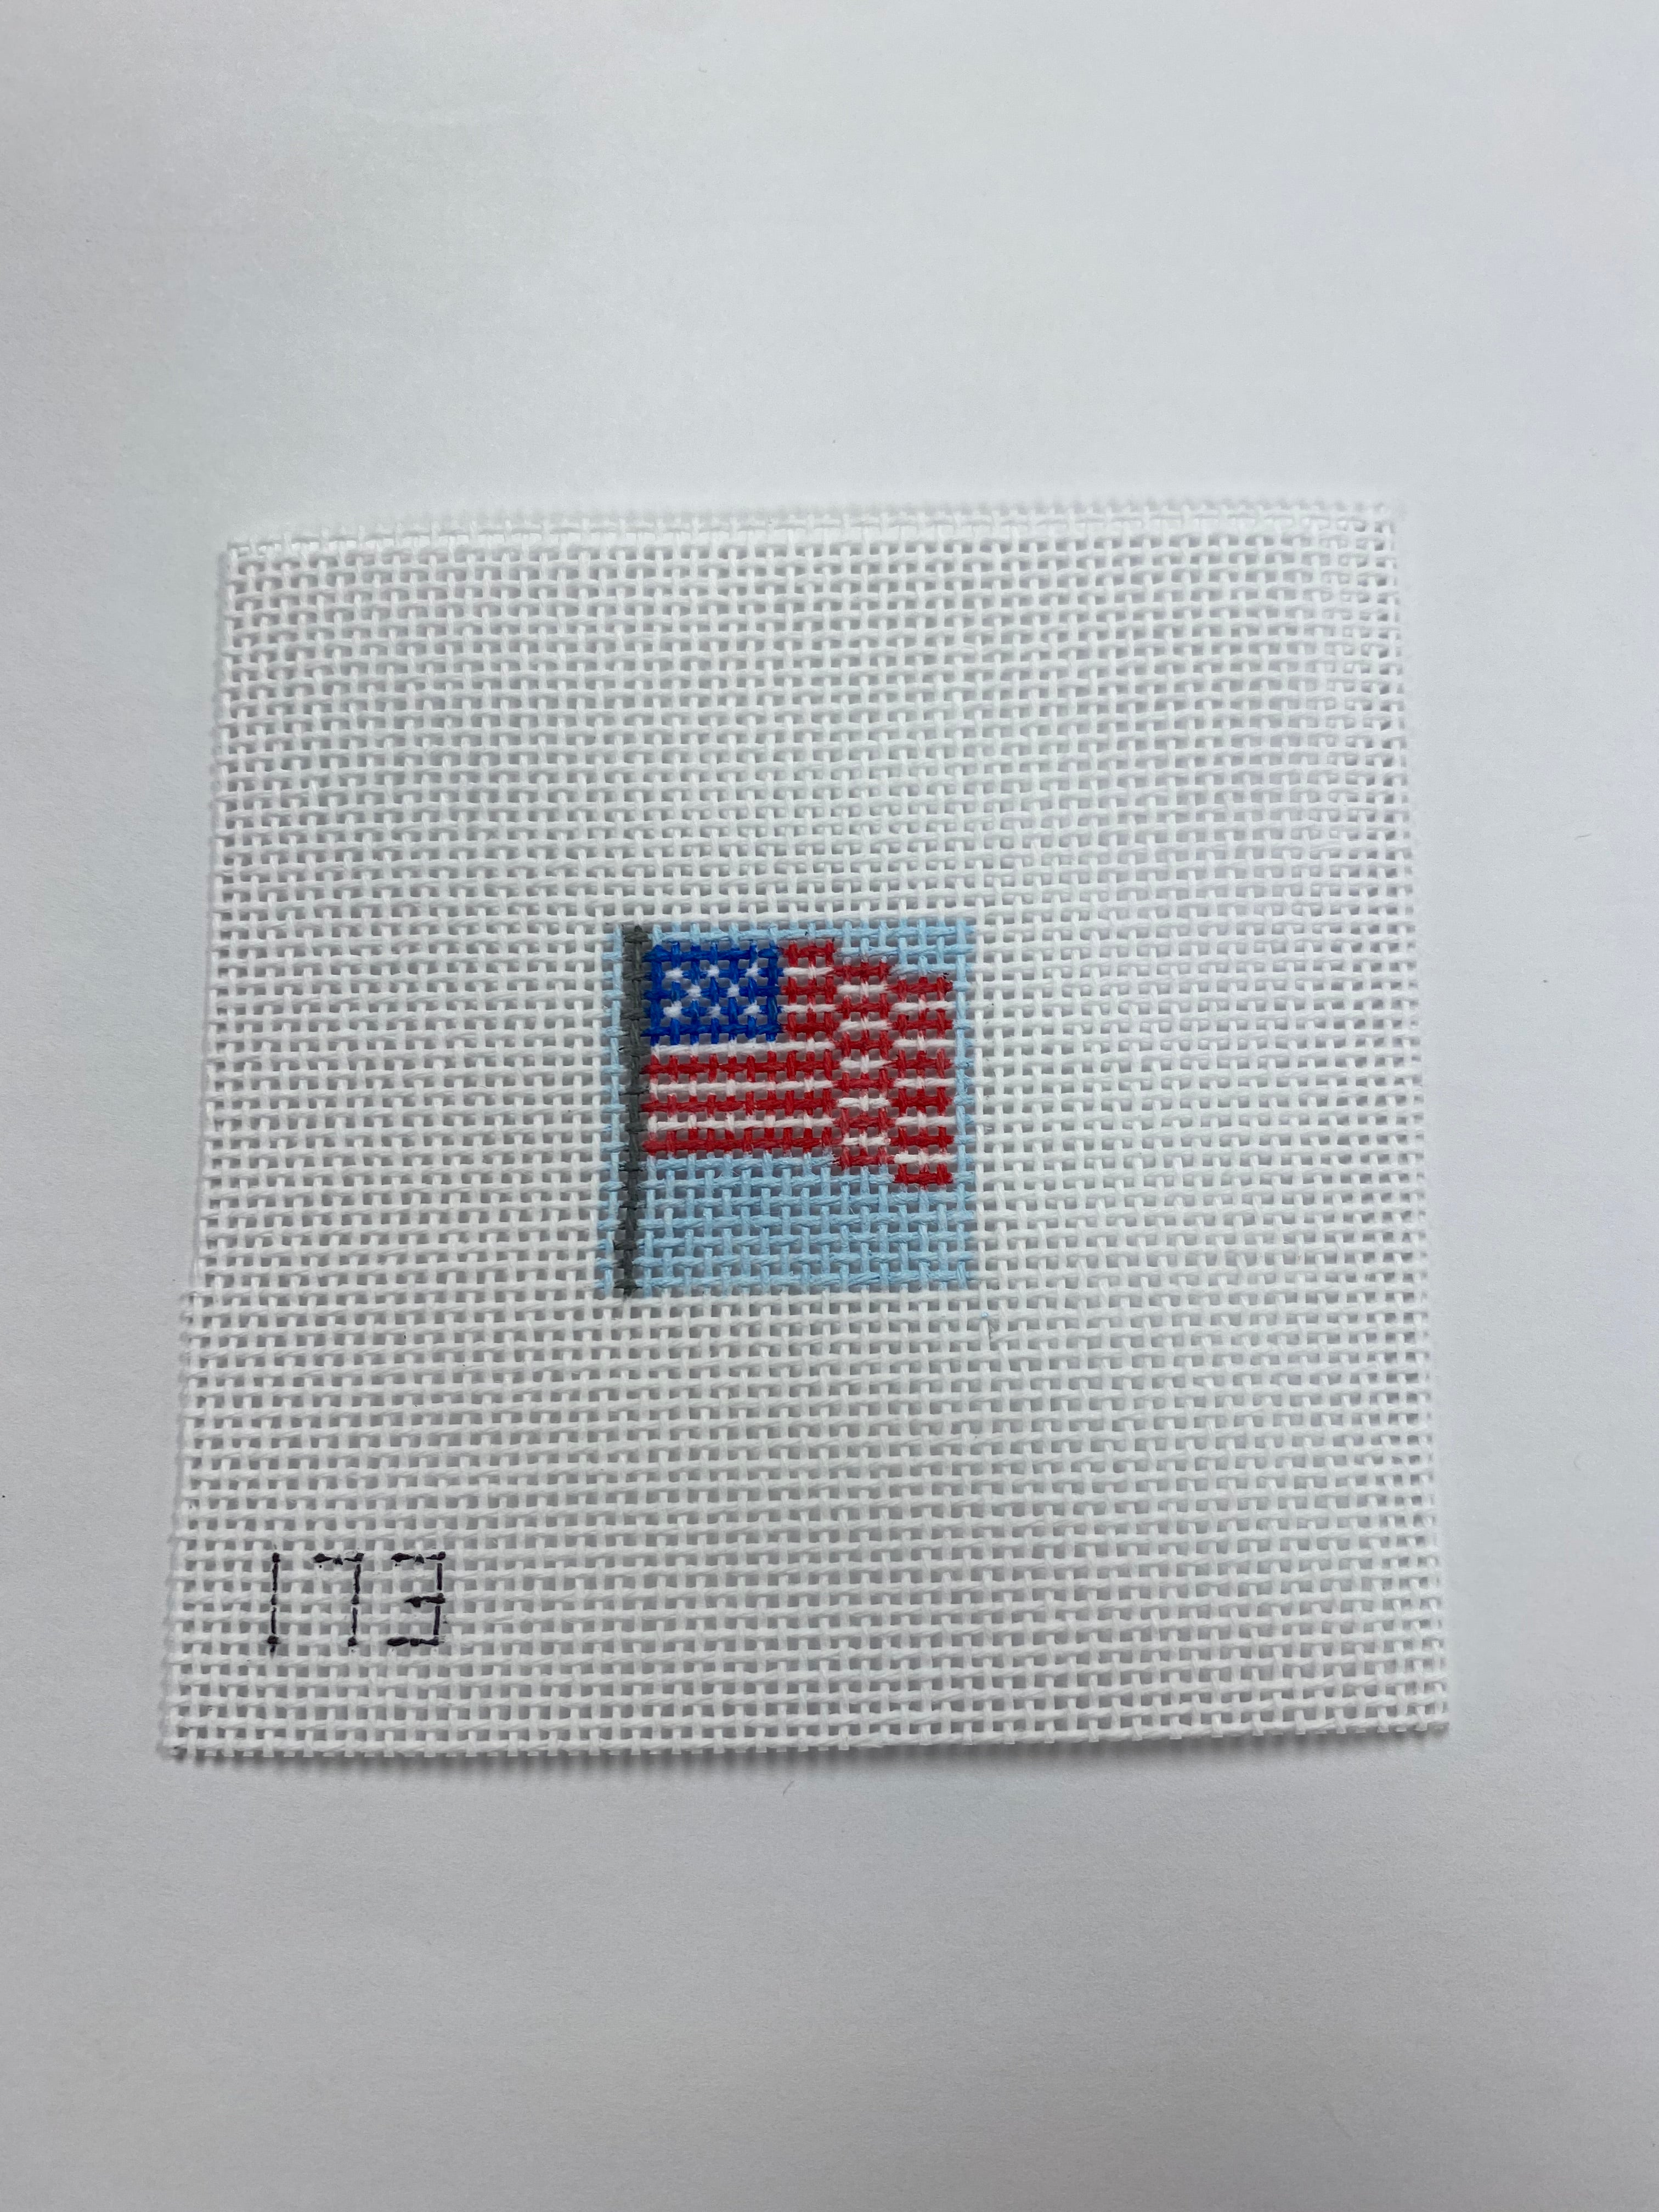 American Flag Sm. 1 inch